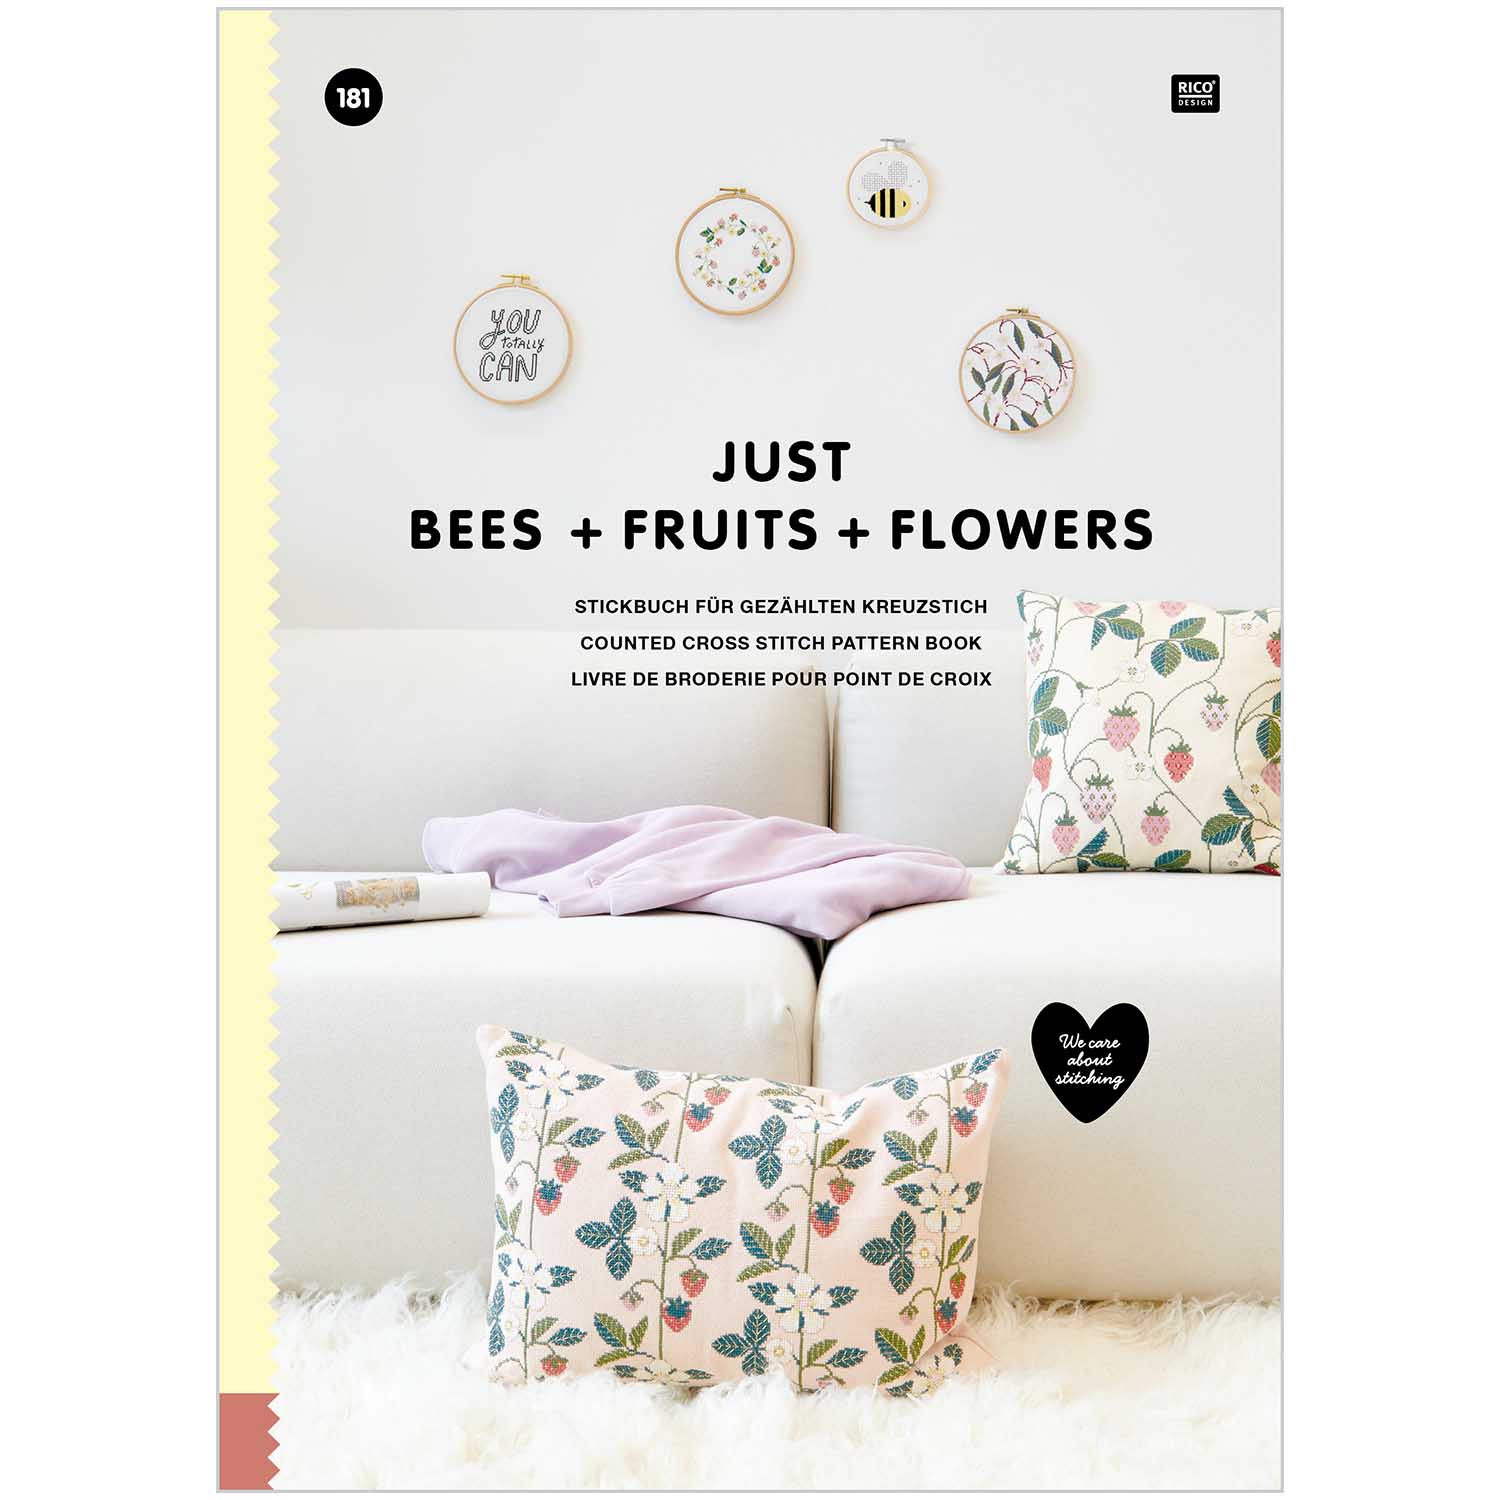 Borduur boek 181 Rico Gewoon Bijen + Vruchten + Bloemen